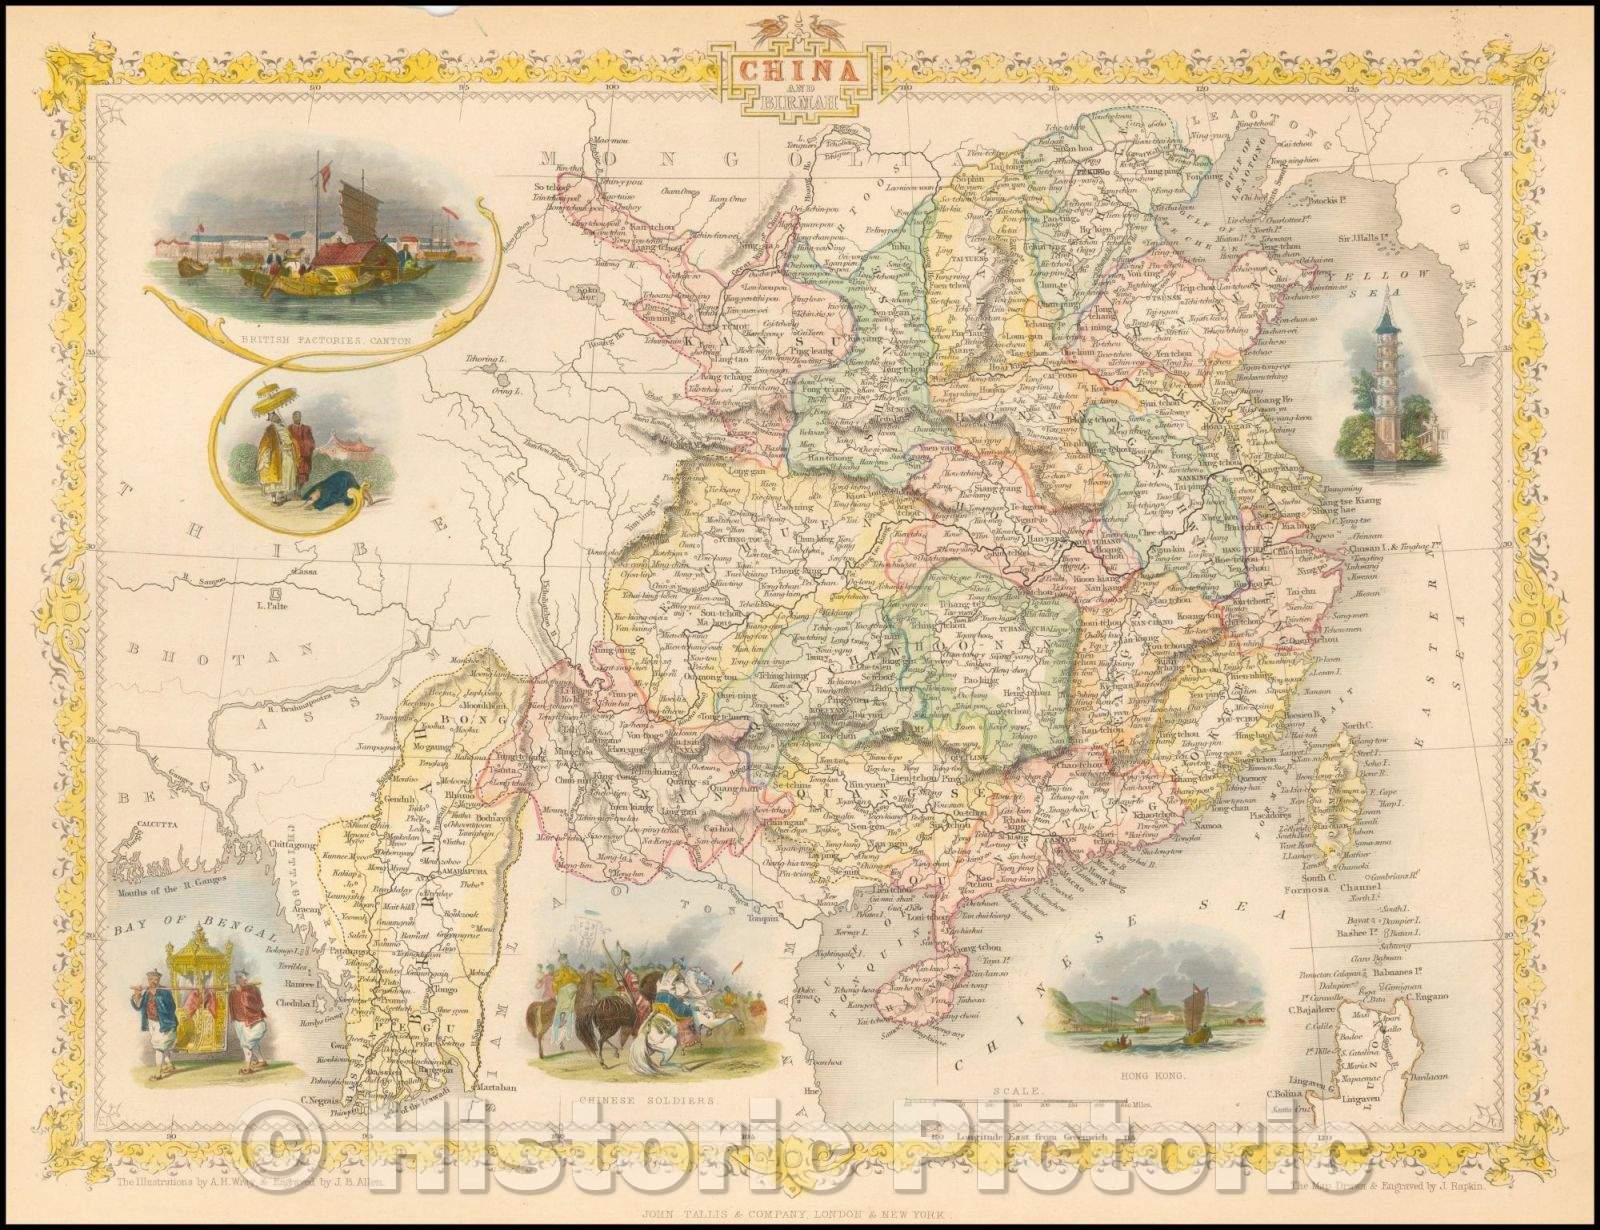 Historic Map - China and Birmah (View of Hong Kong), 1851, John Tallis v1